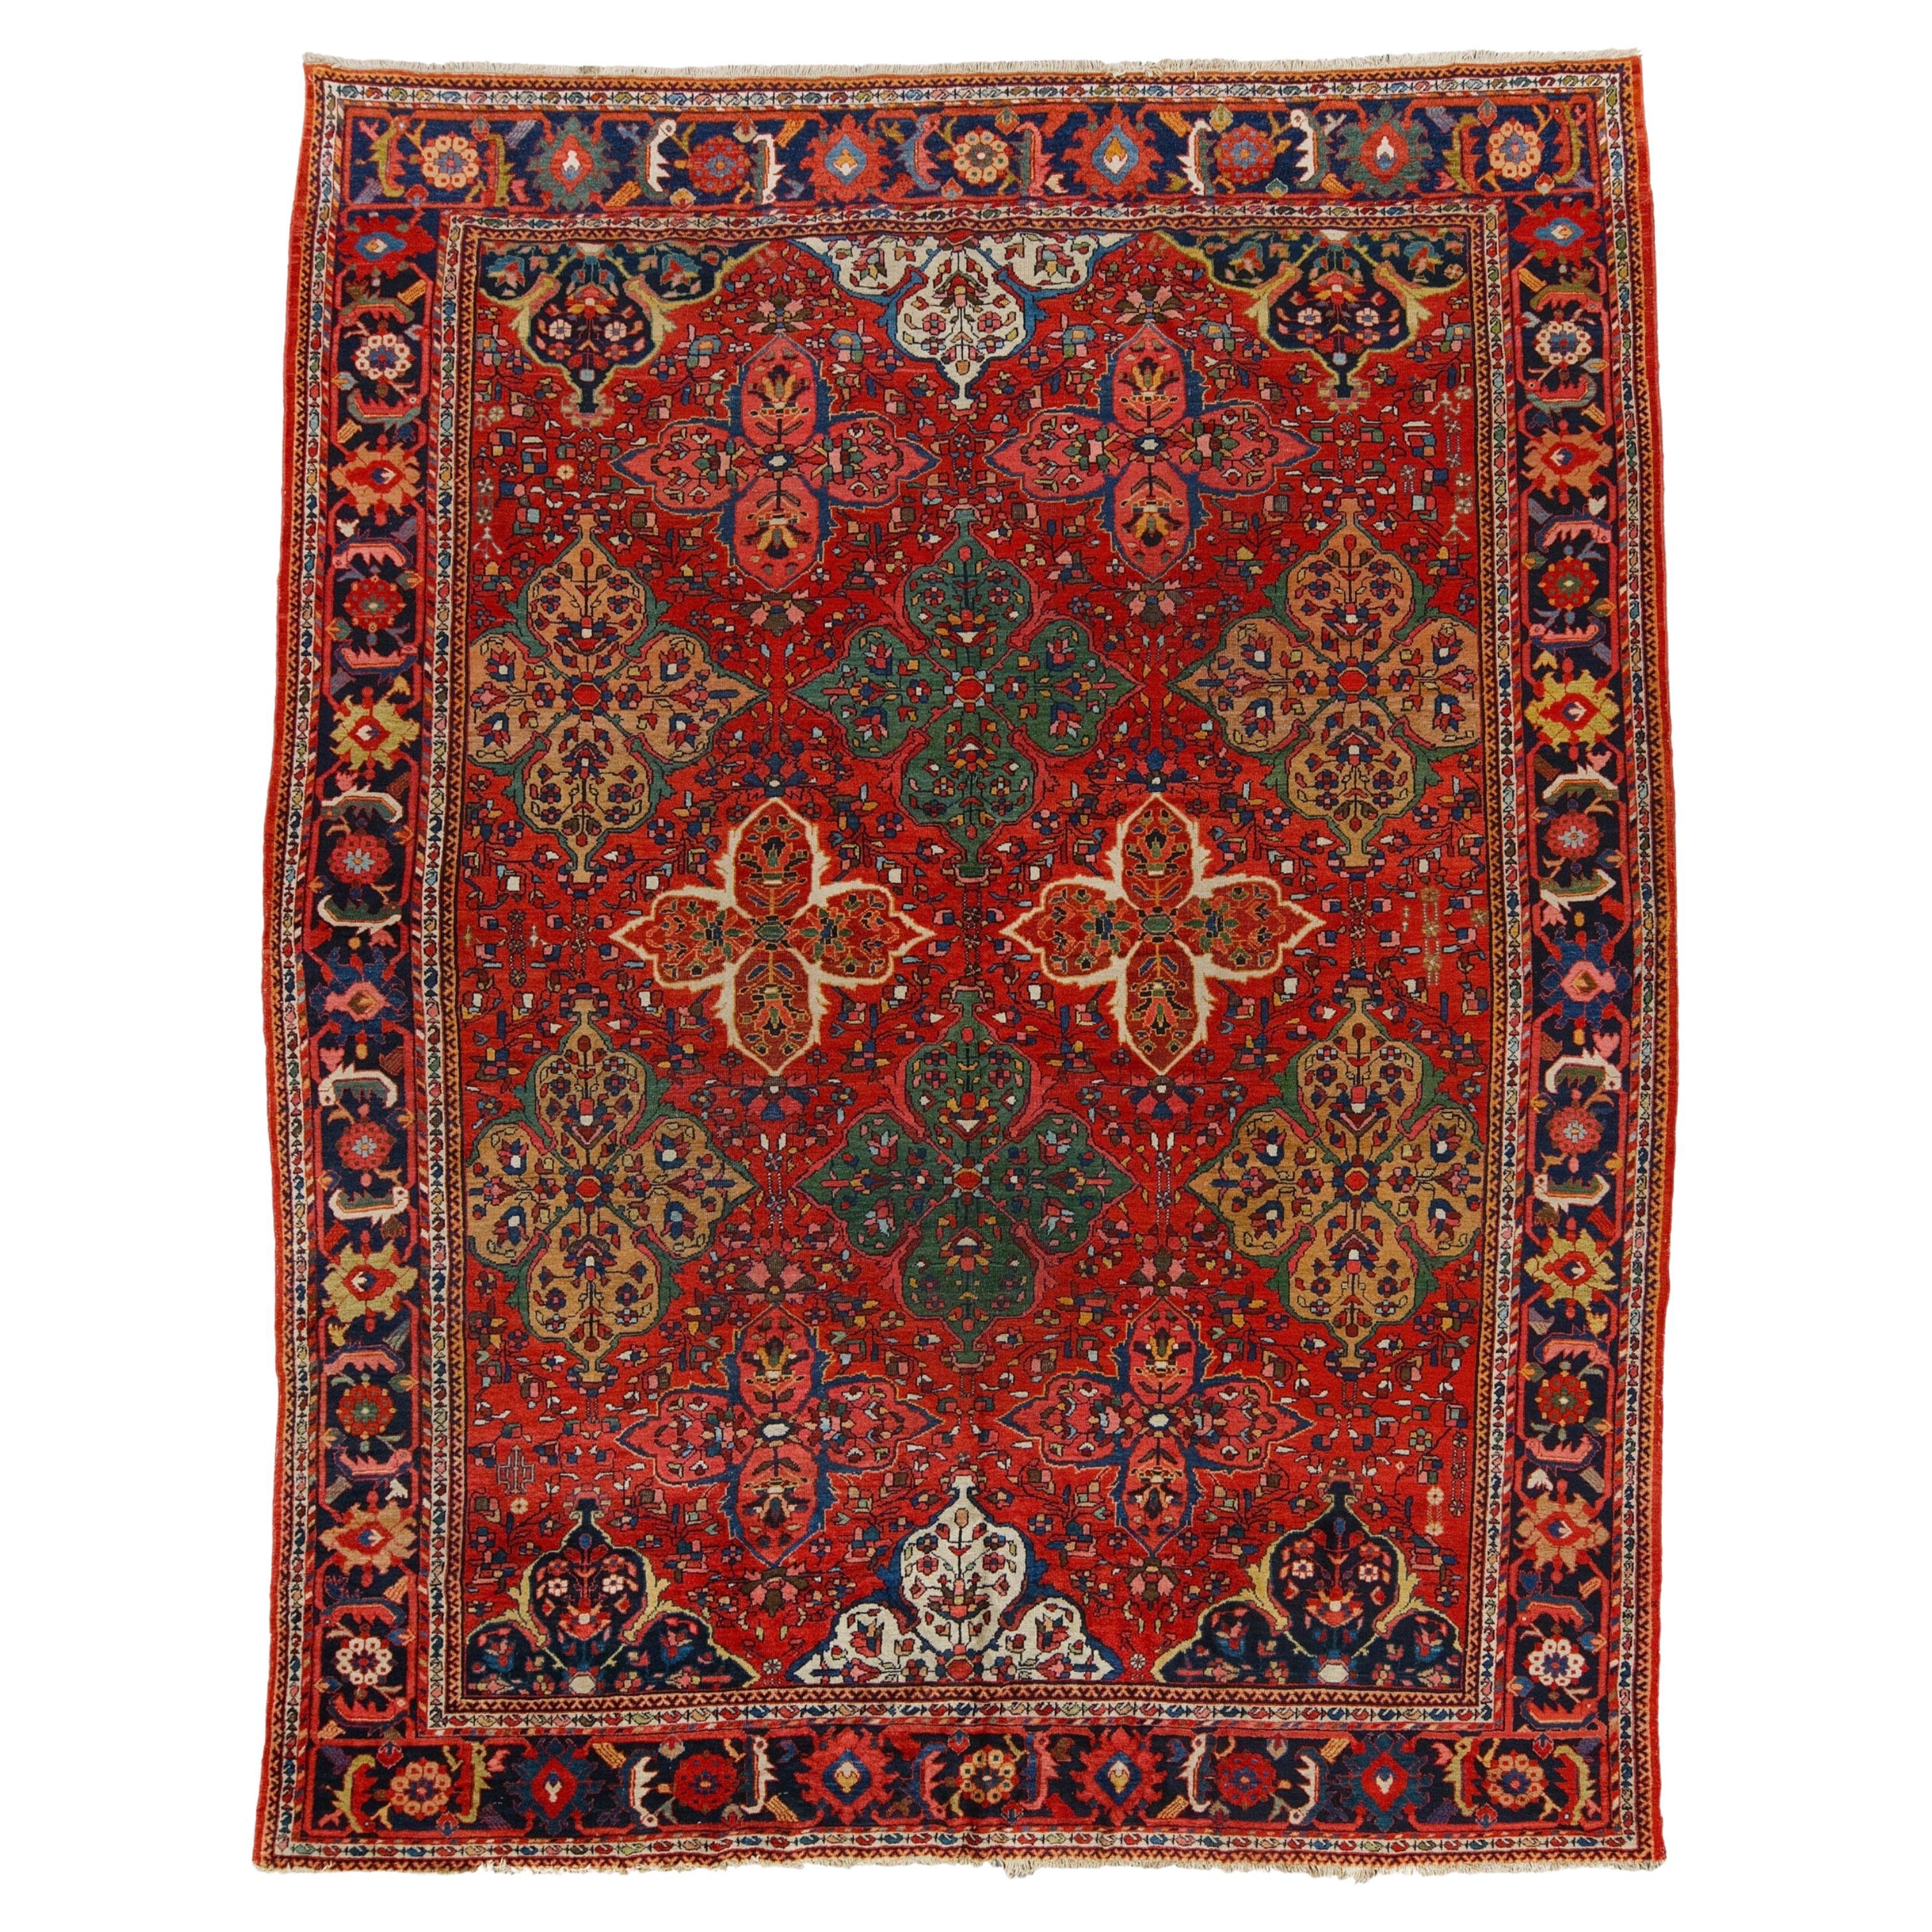 Antique Mahal Carpet - Late of 19th Century Mahal Carpet, Antique Rug